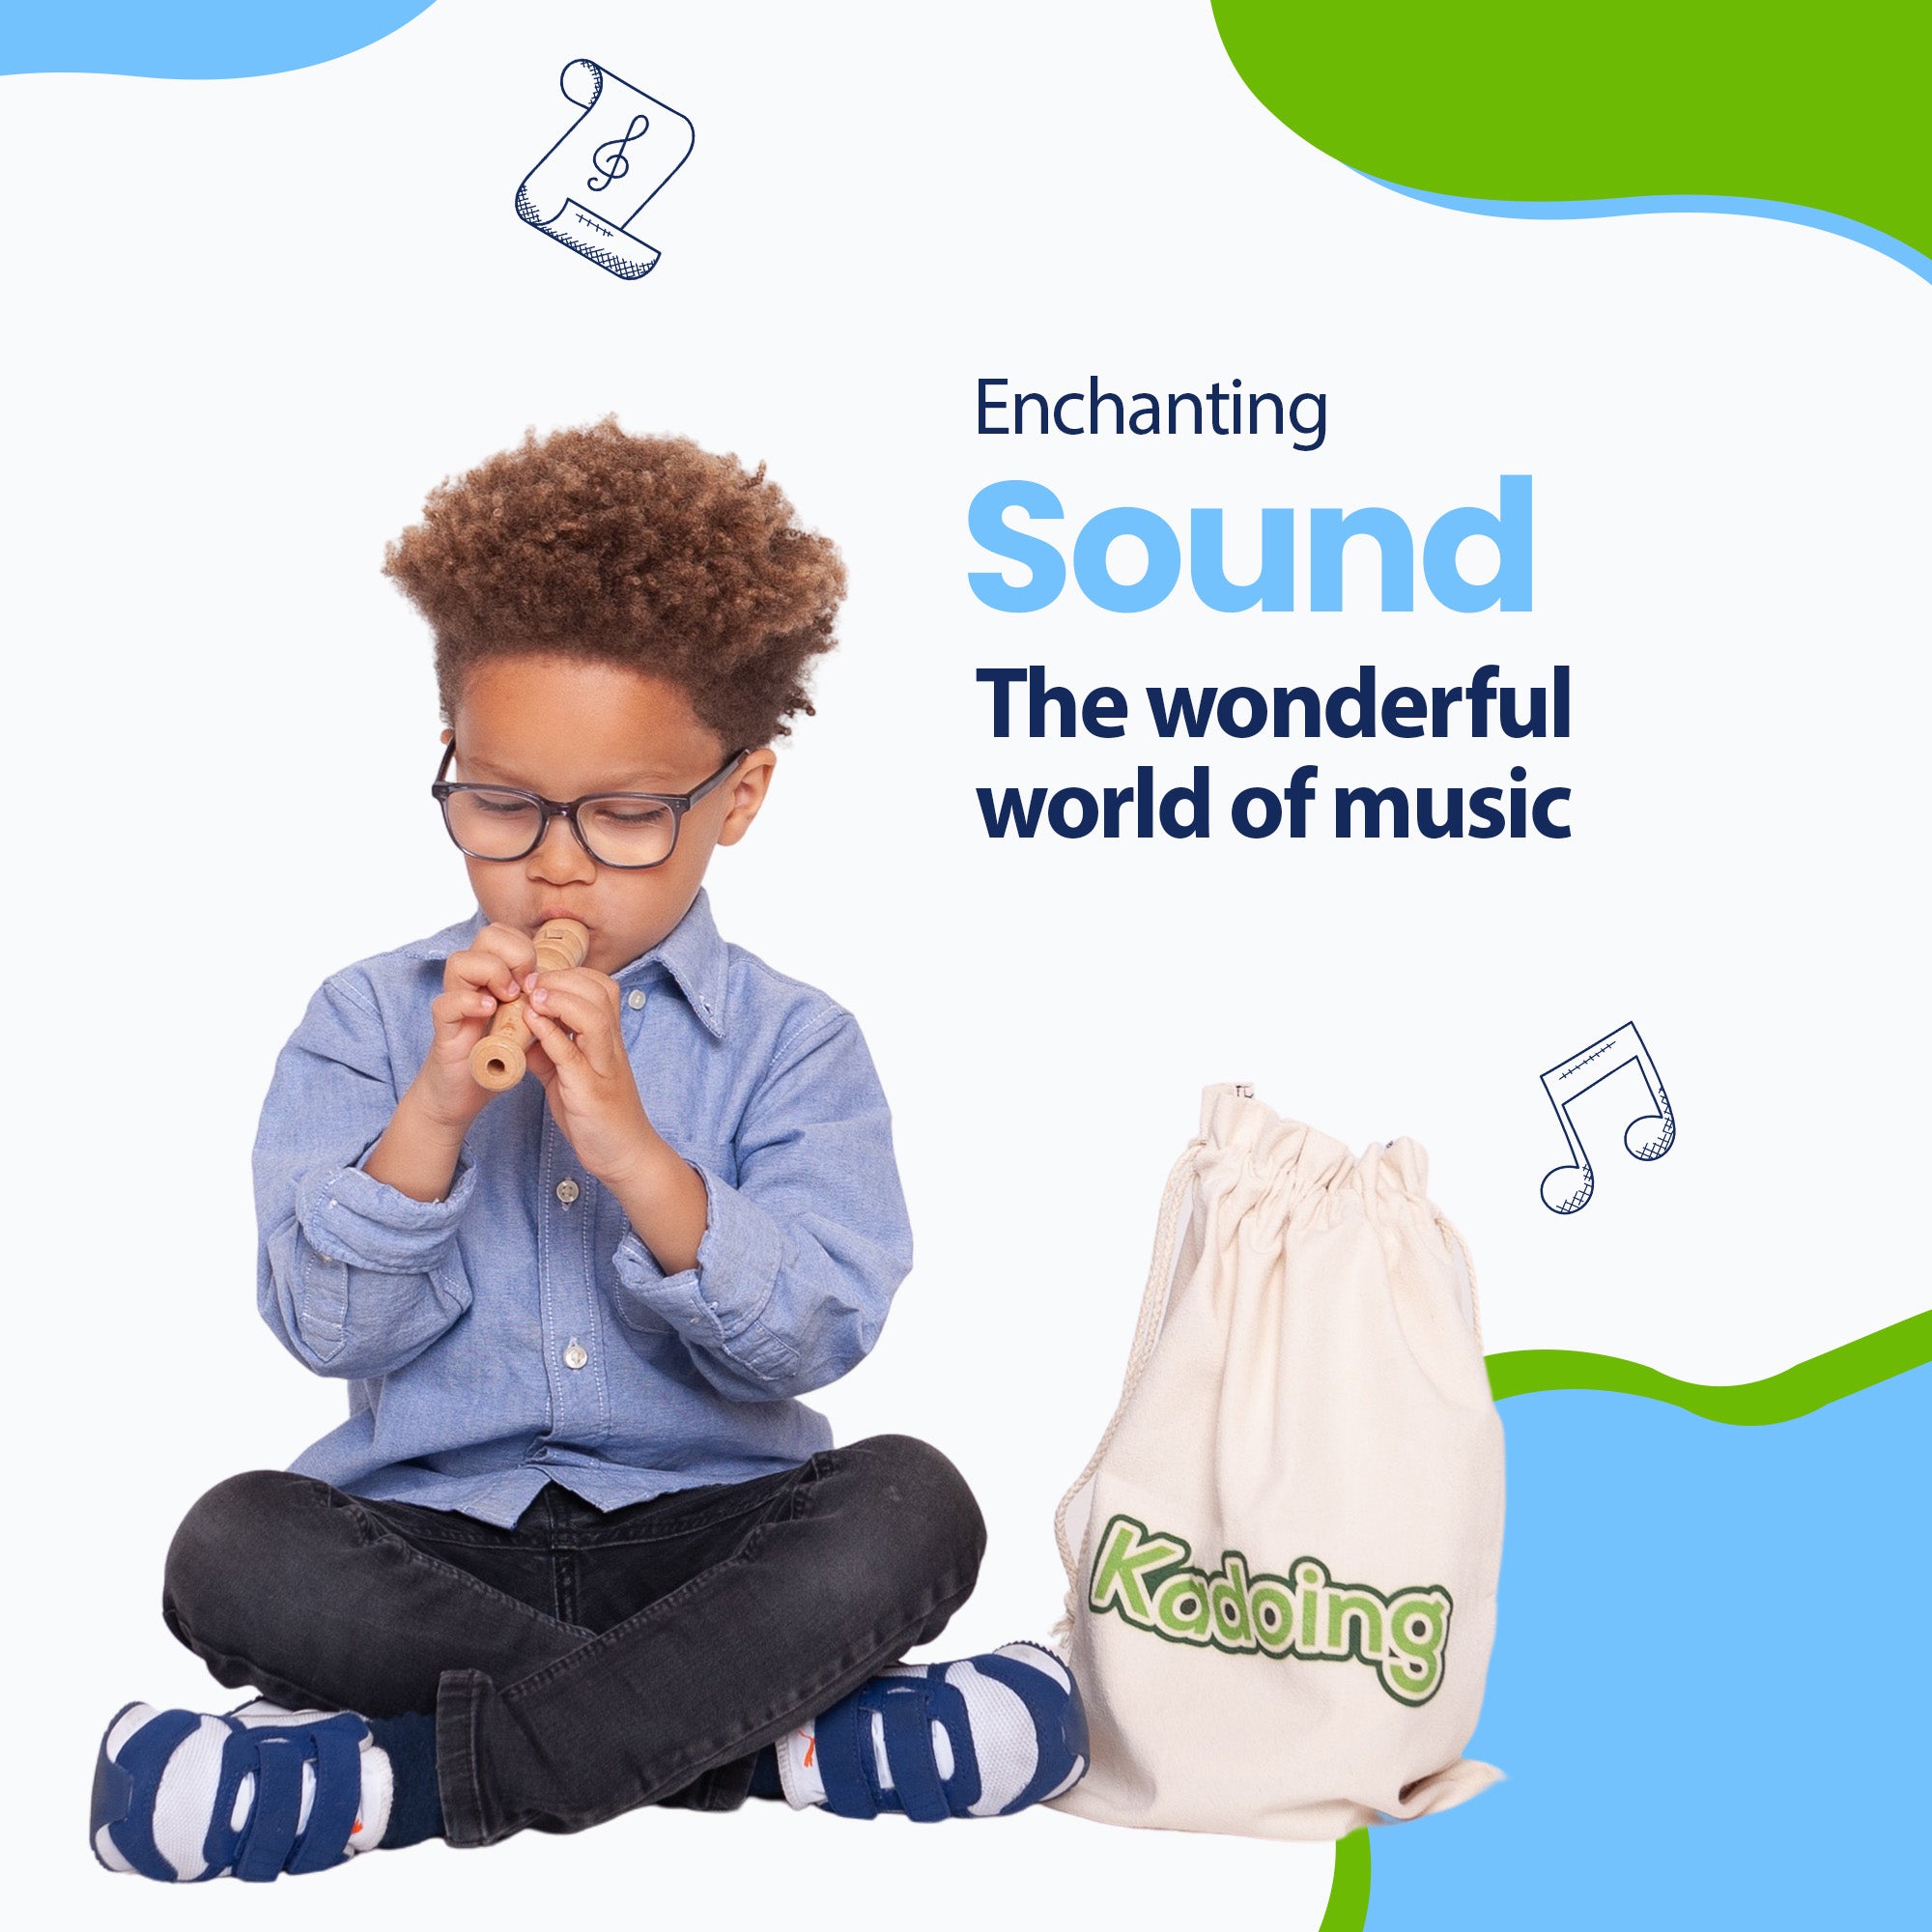 Los sonidos de la música realmente impresionan a los niños. Su hijo ahora podrá sorprenderle con sus habilidades musicales. ¡Simplemente encantador!